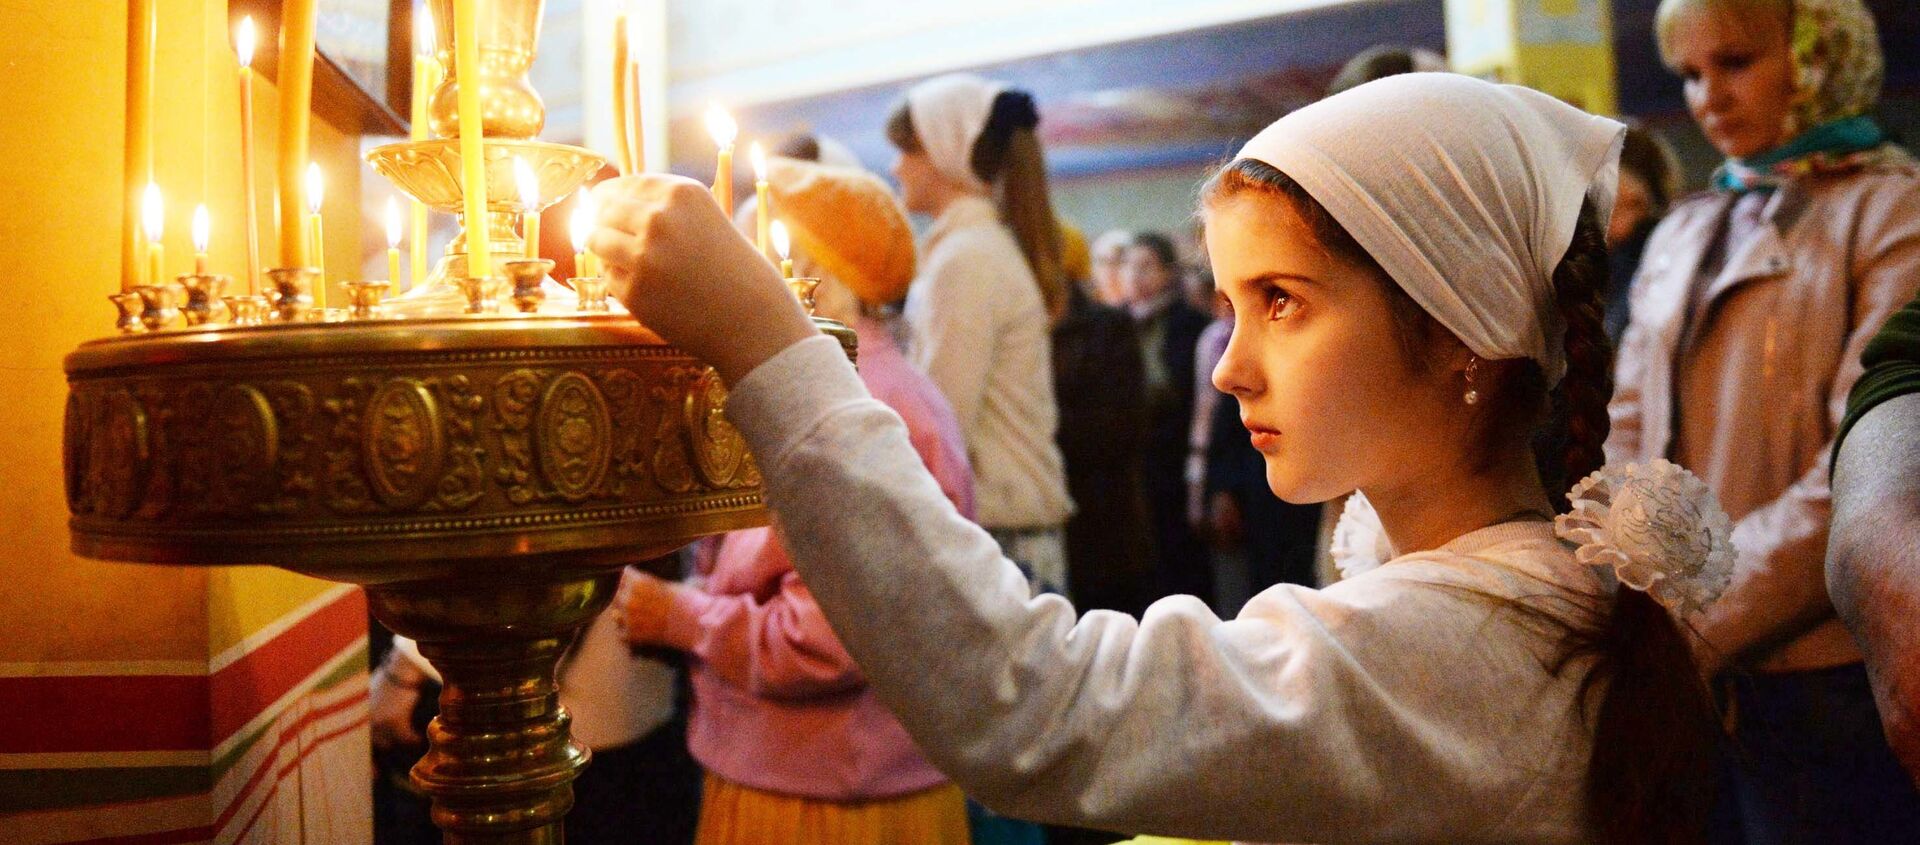 Девочка ставит свечку в православном храме, архивное фото - Sputnik Таджикистан, 1920, 20.02.2021